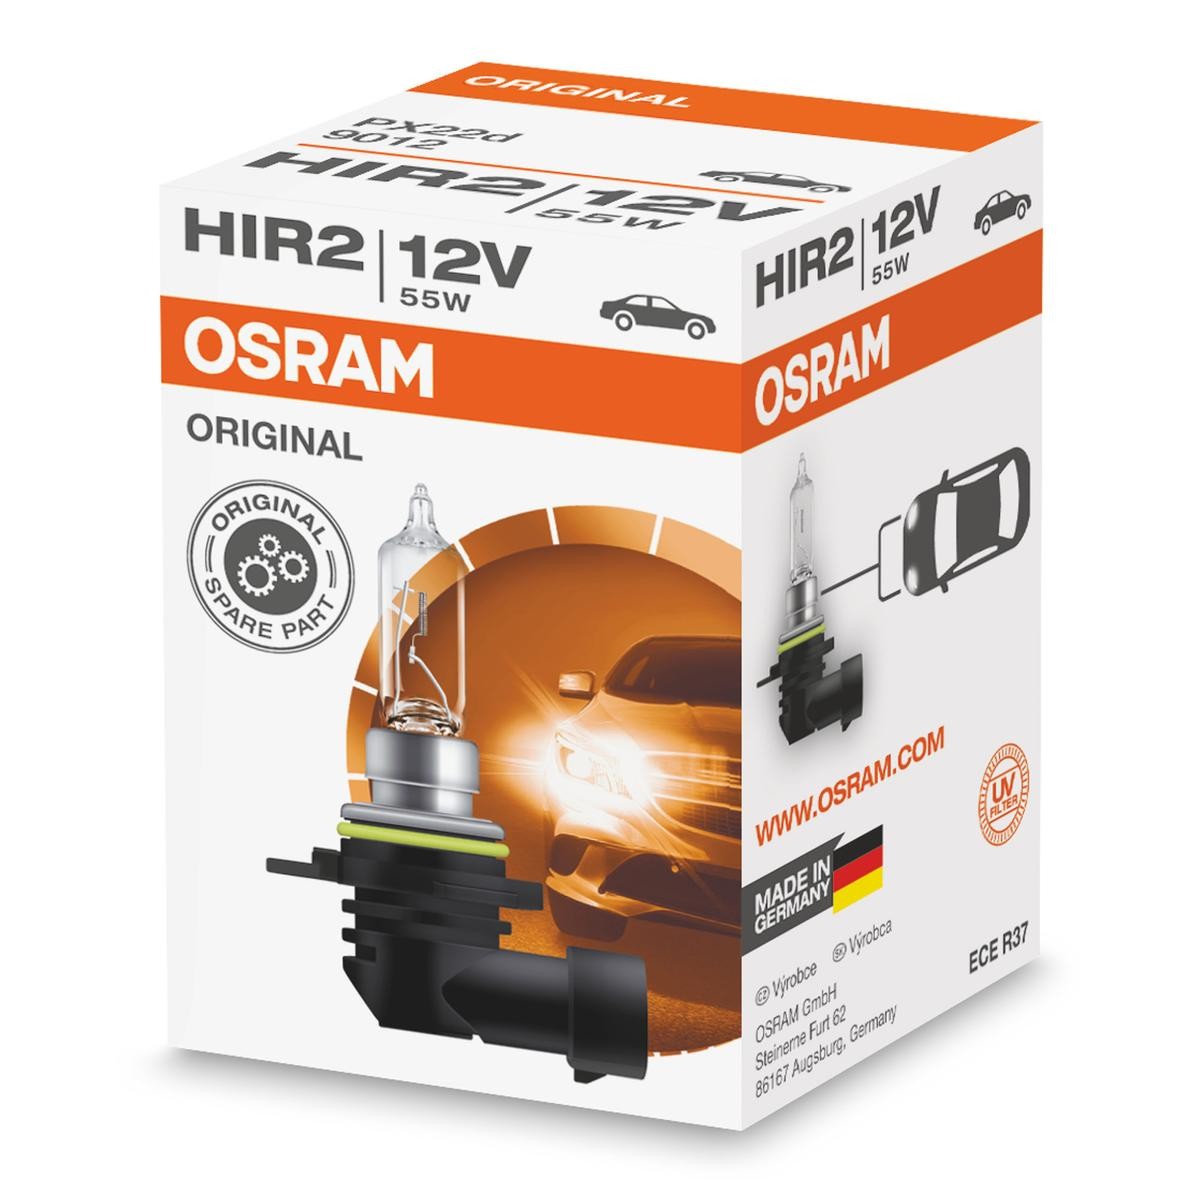 OSRAM 9012 Gloeilamp grote koplichten HIR2 12V 55W3200K Halogeen ORIGINAL